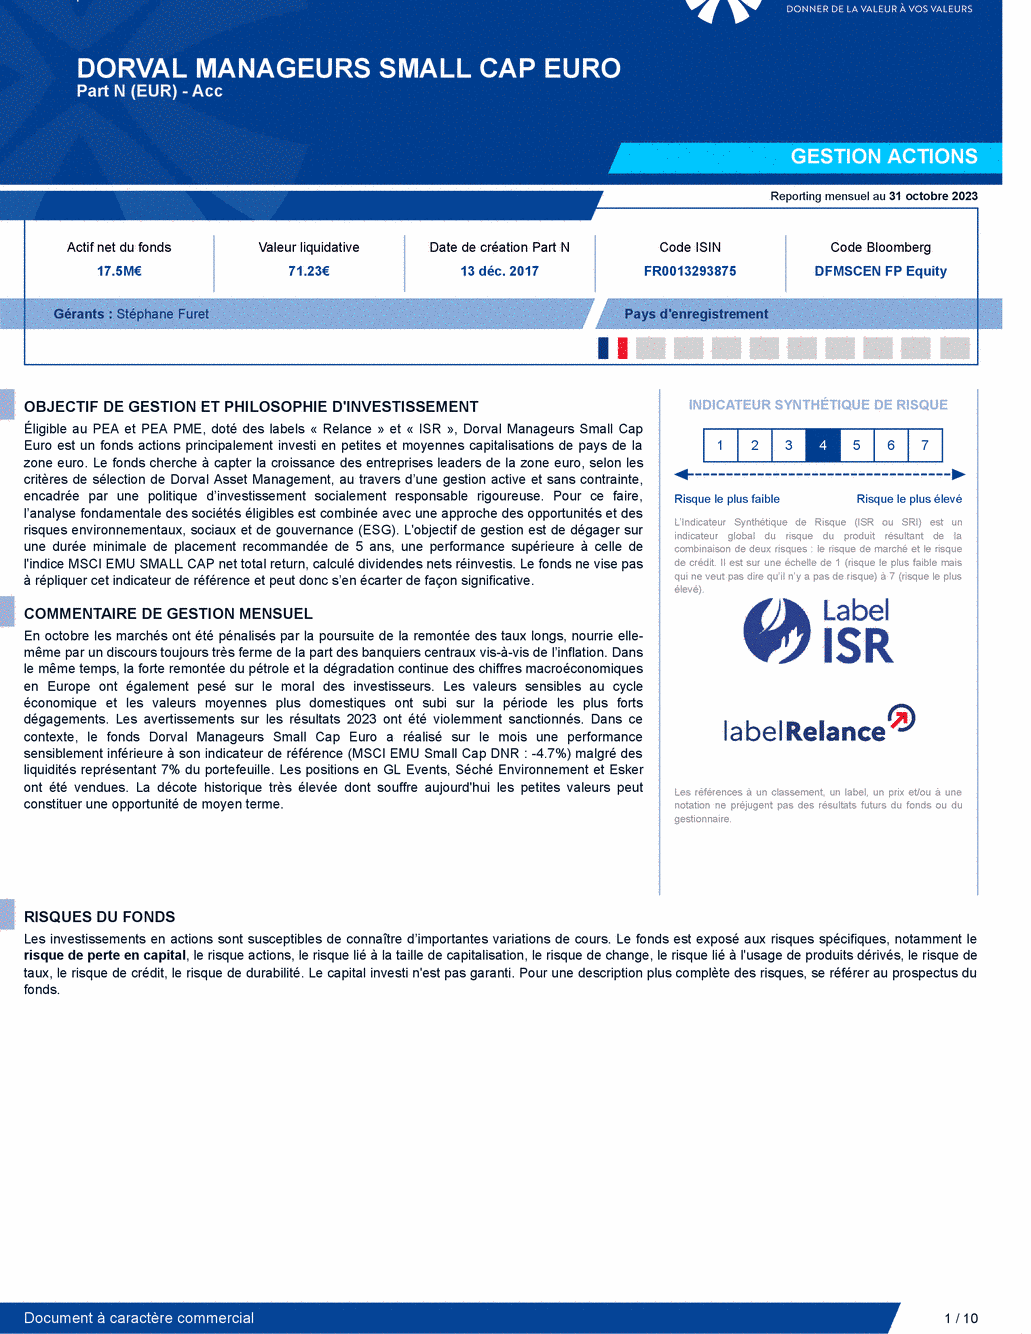 Reporting DORVAL MANAGEURS SMALL CAP EURO N - 31/10/2023 - Français